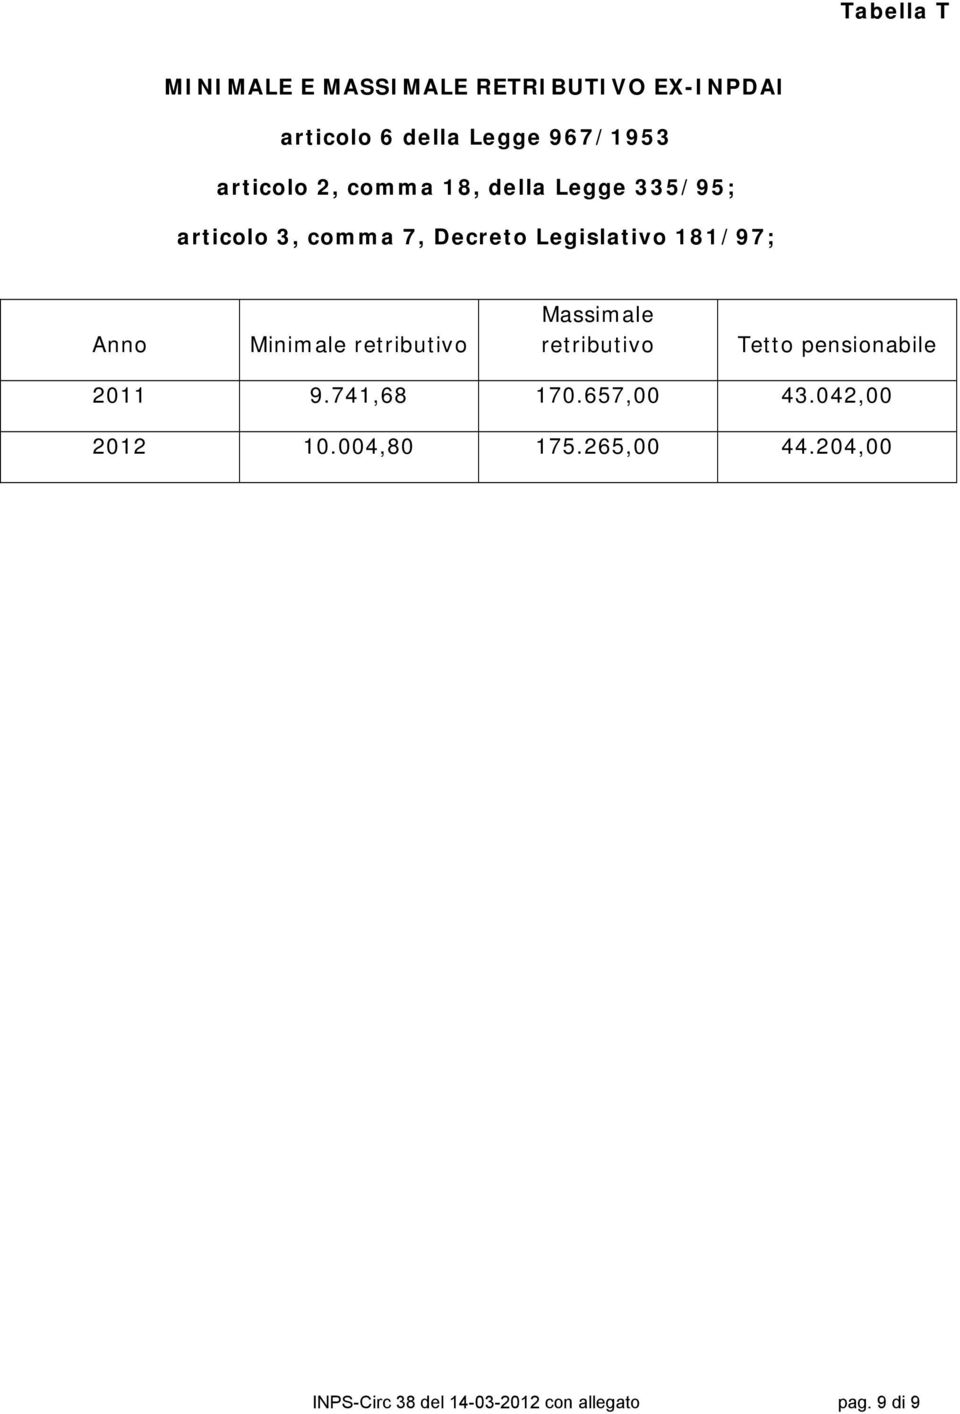 Anno Minimale retributivo Massimale retributivo Tetto pensionabile 2011 9.741,68 170.